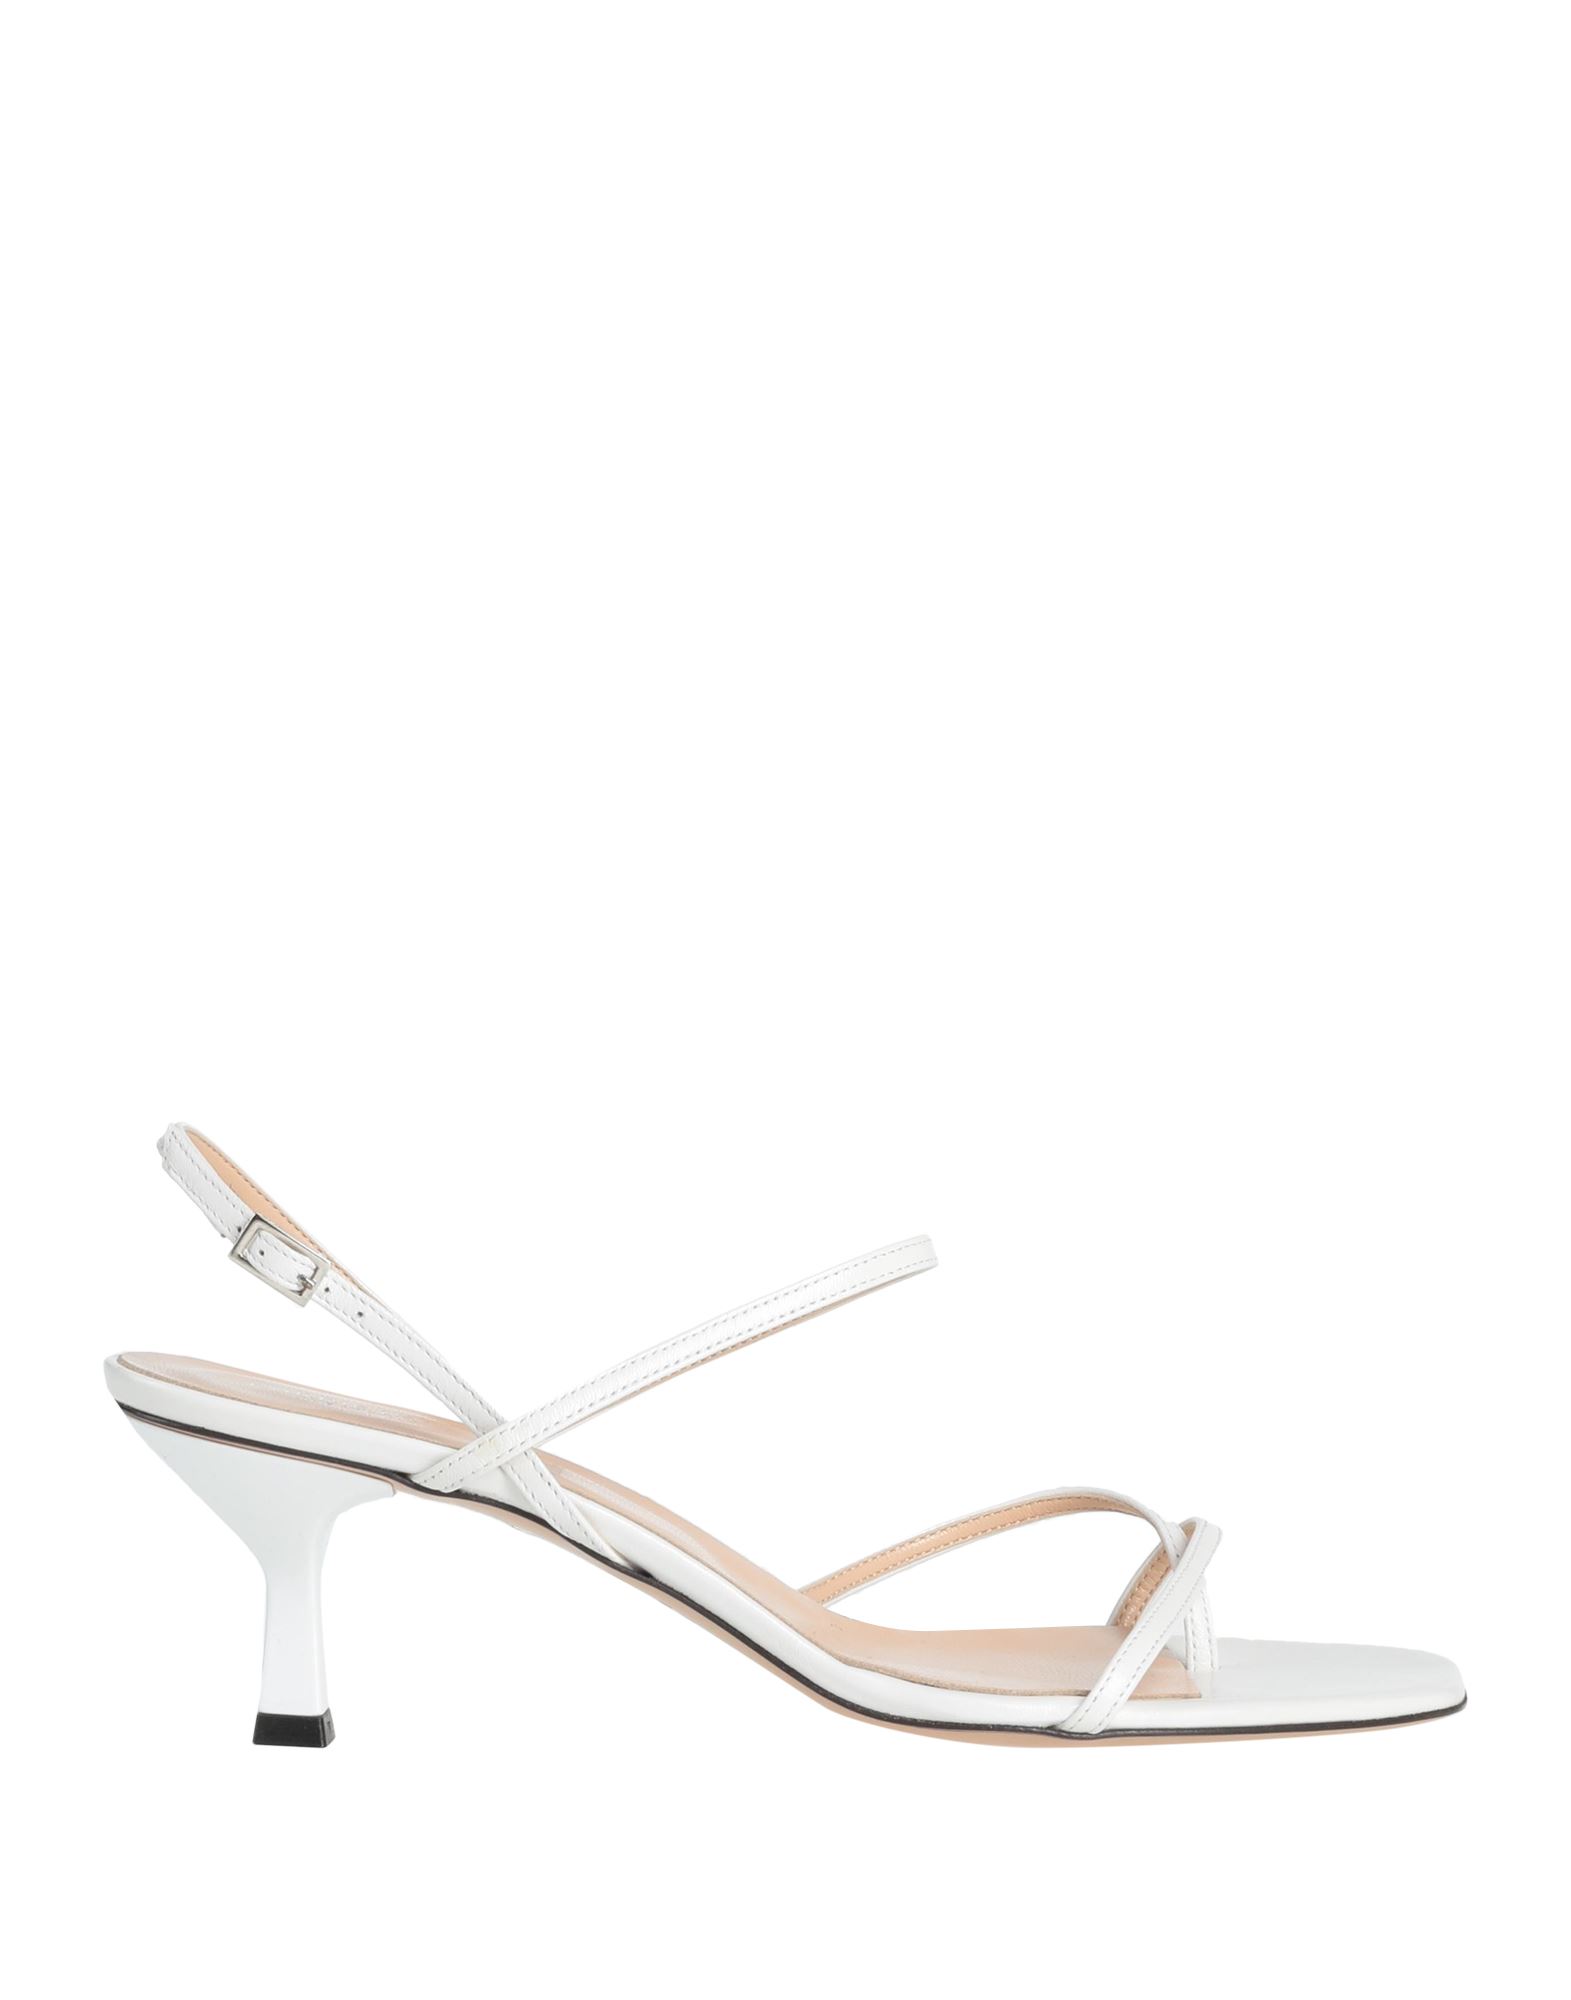 Carrie Latt Toe Strap Sandals In White